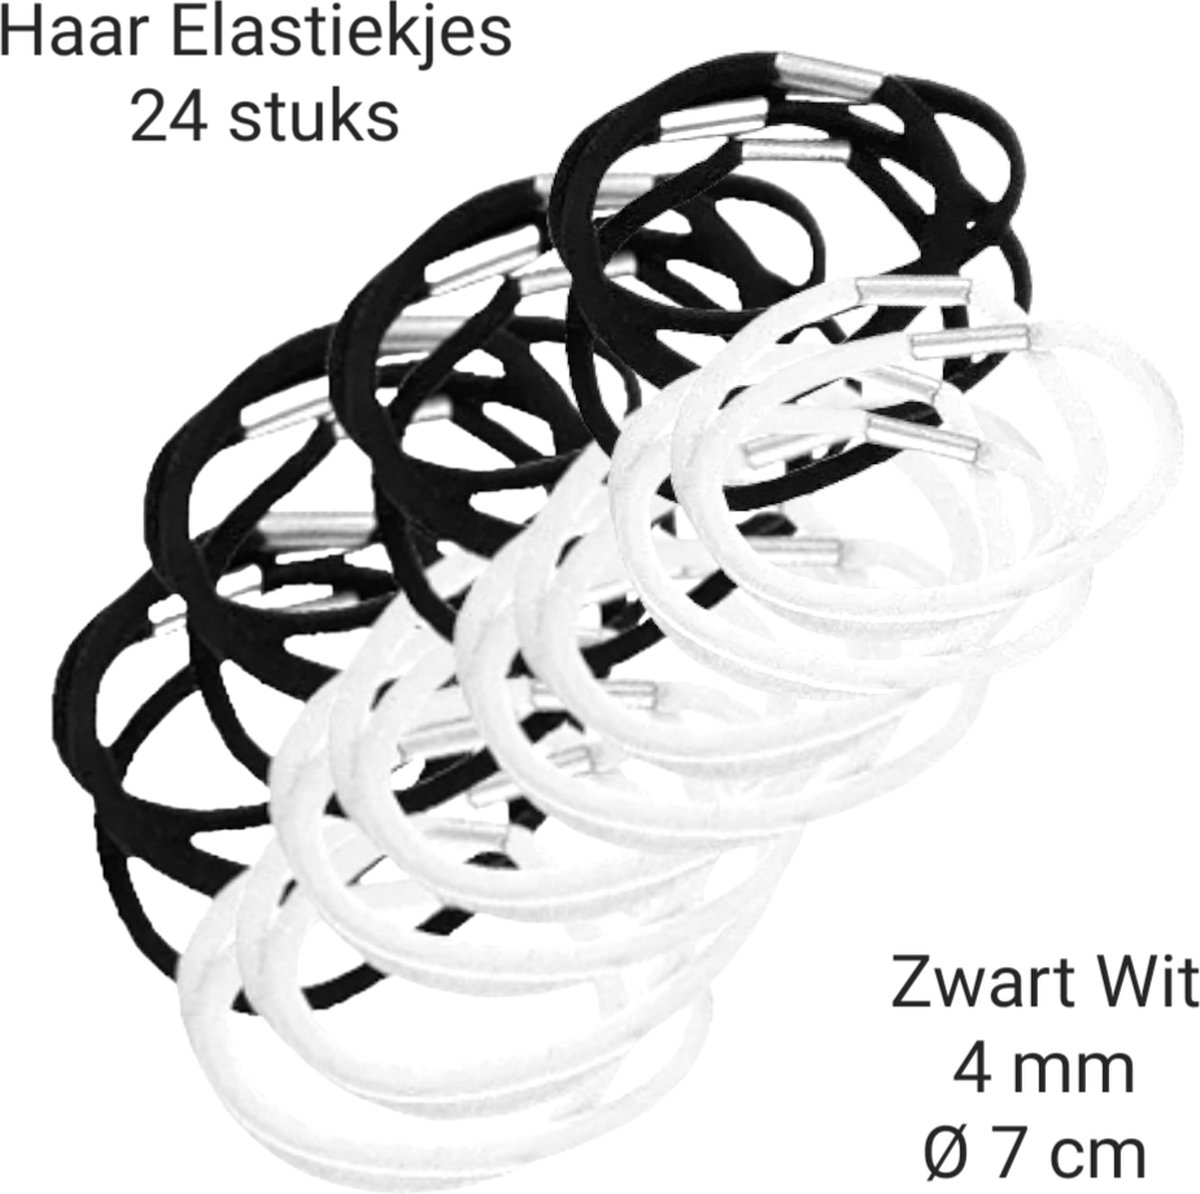 NT - Haar elastiekjes - Zwart Wit - Dikte 4mm - Ø 7 cm - 24 stuks